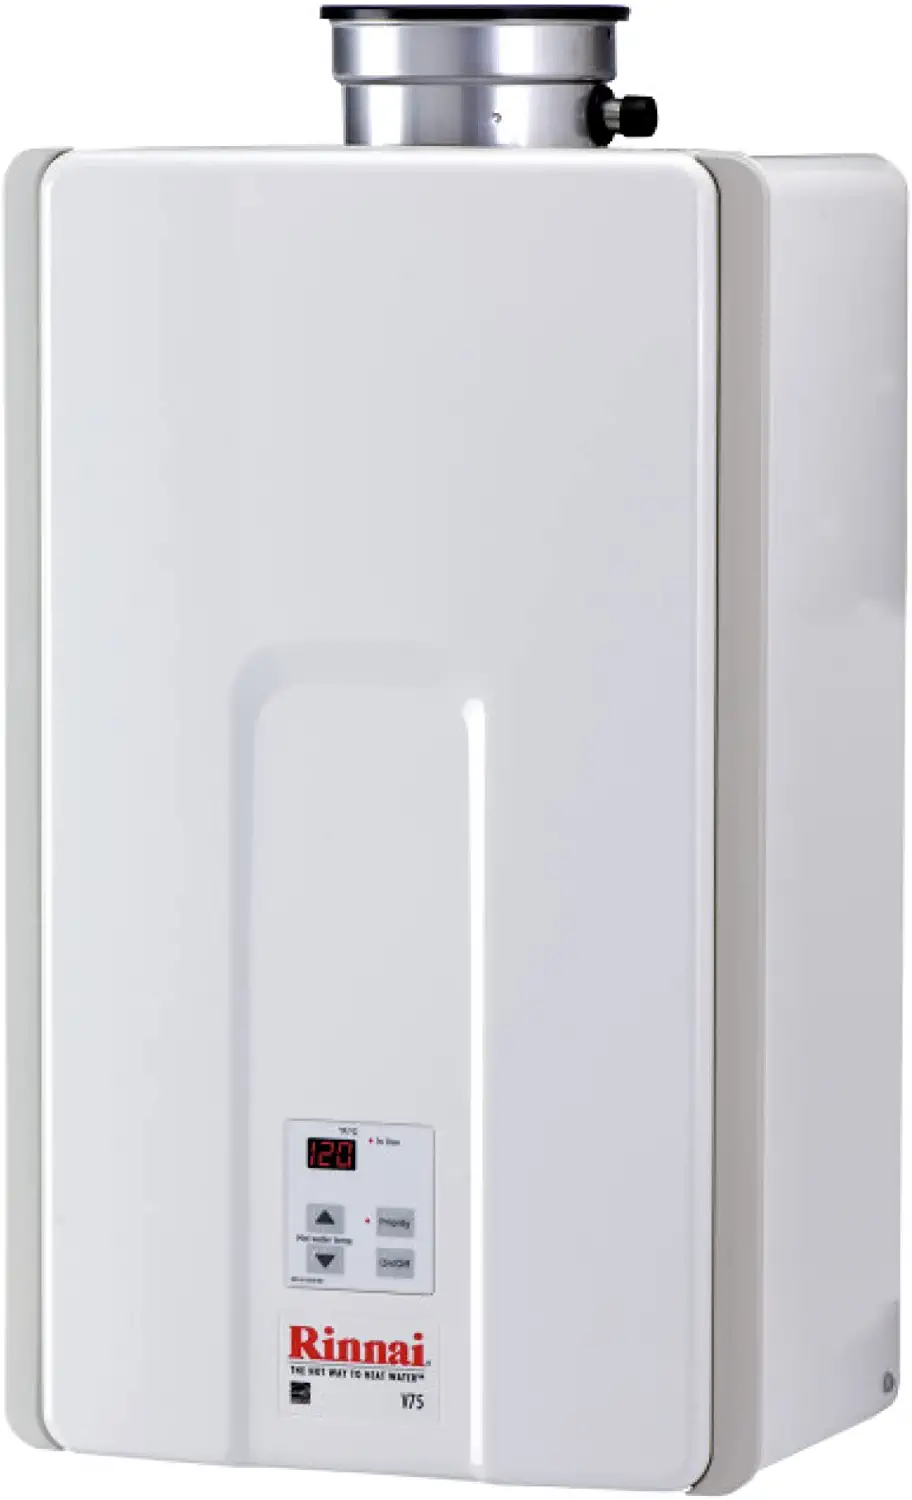 Rinnai Gas Tankless Hot Water Heater Logo